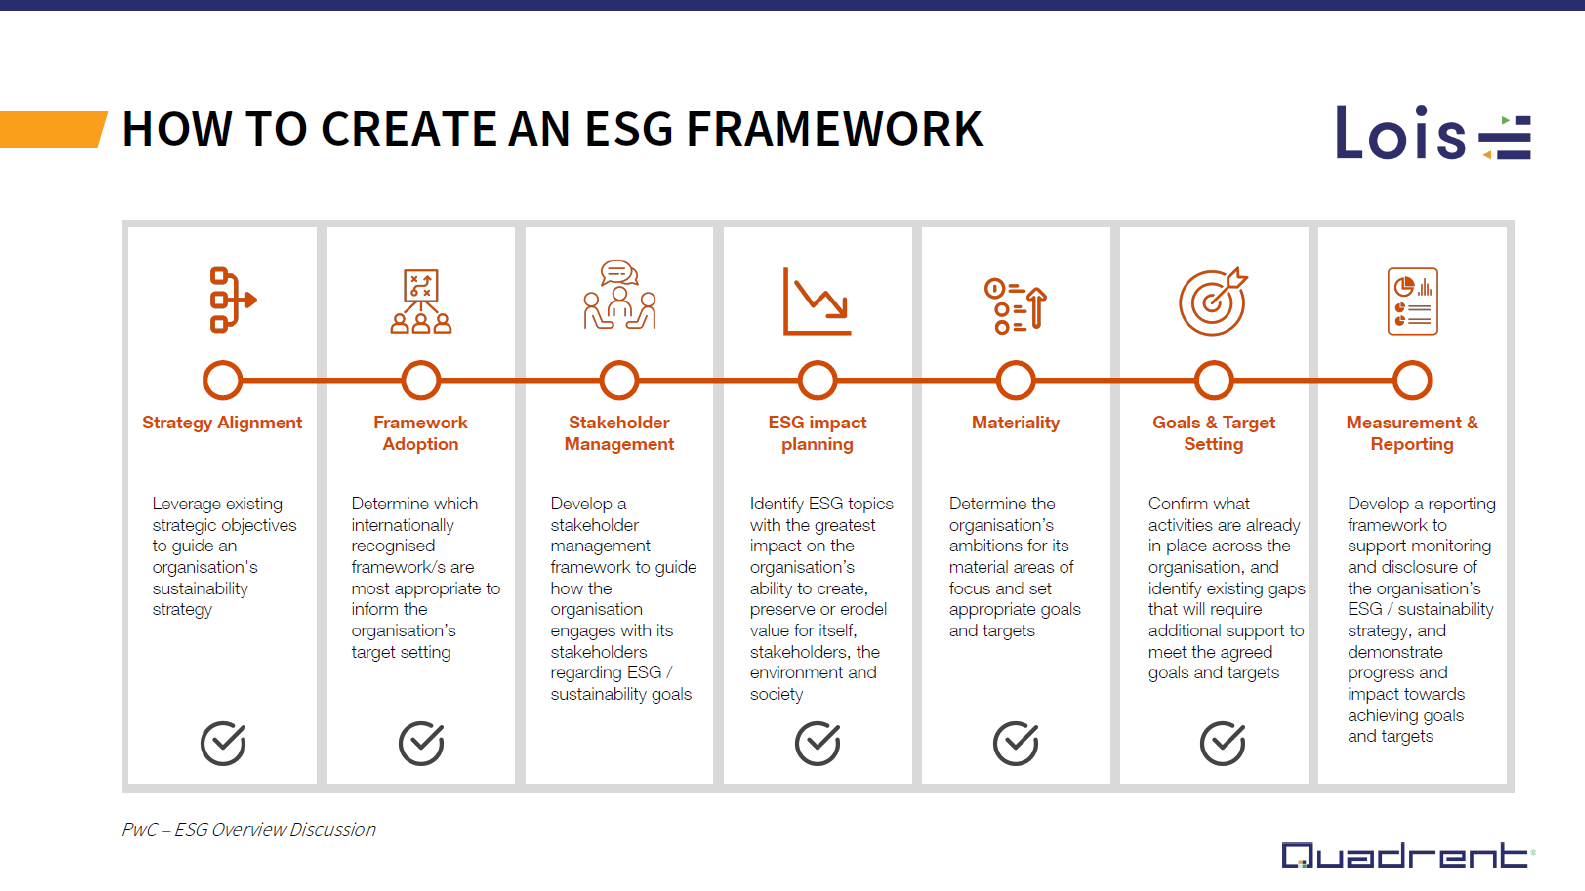 How to create an ESG framework